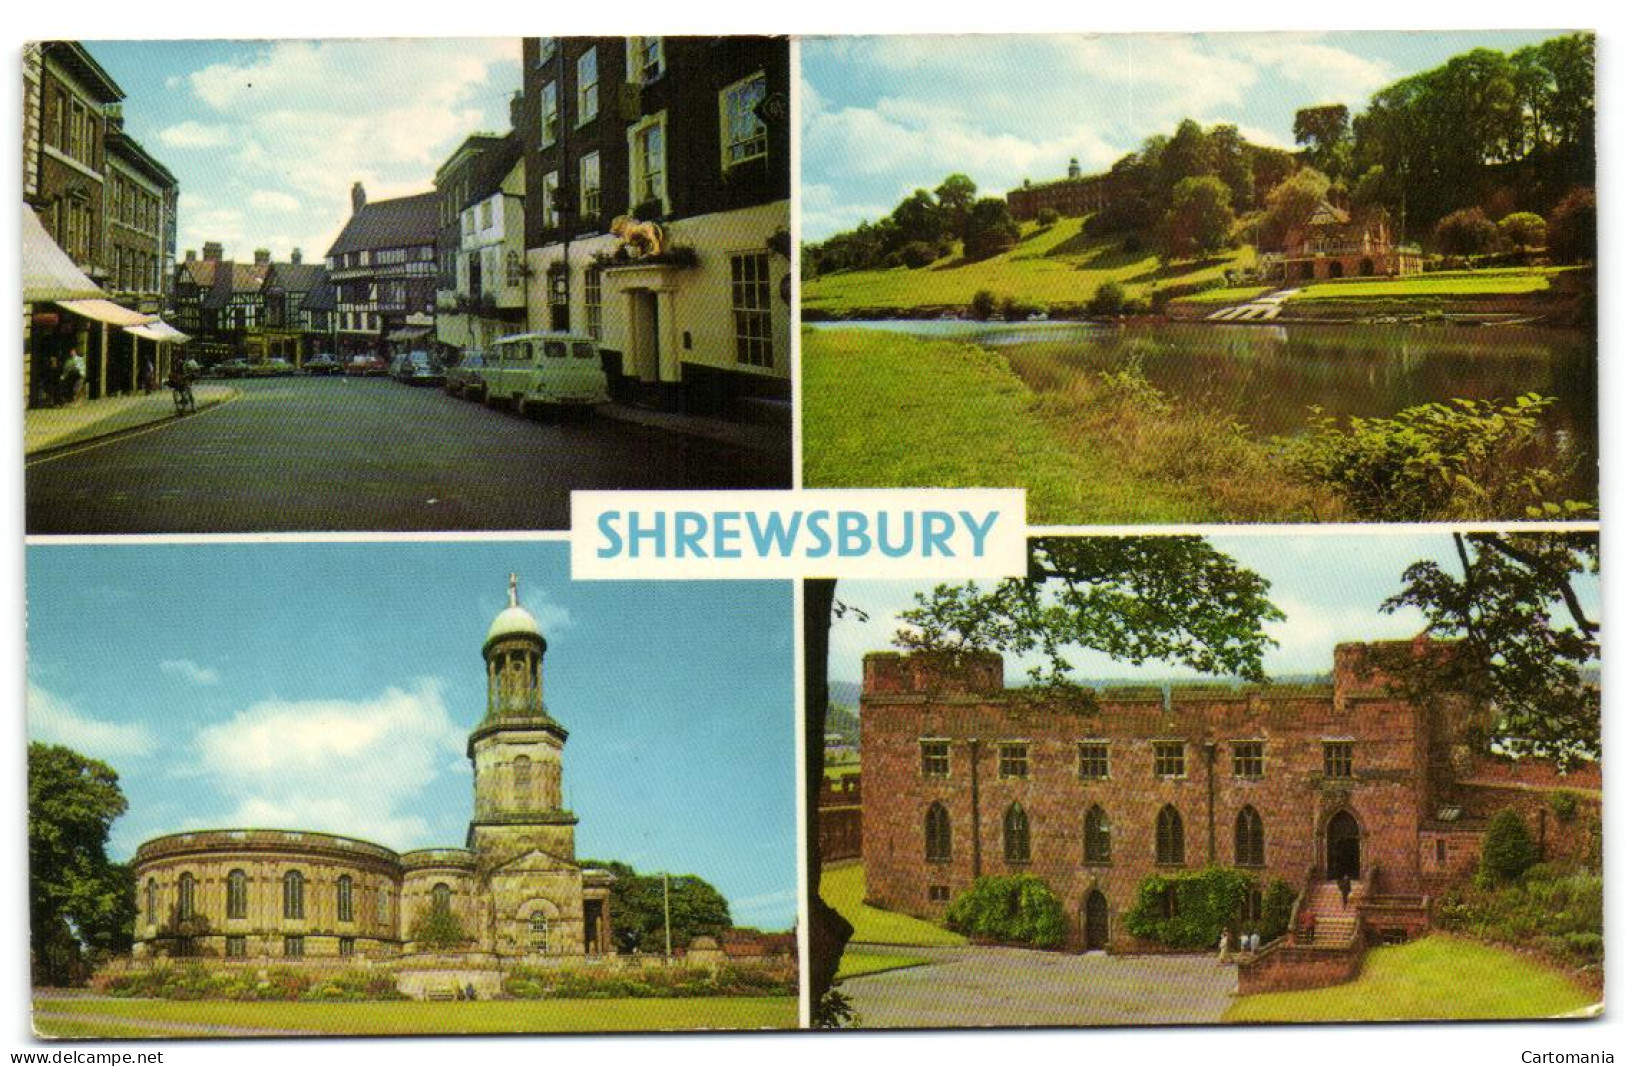 Shrewsbury - Shropshire